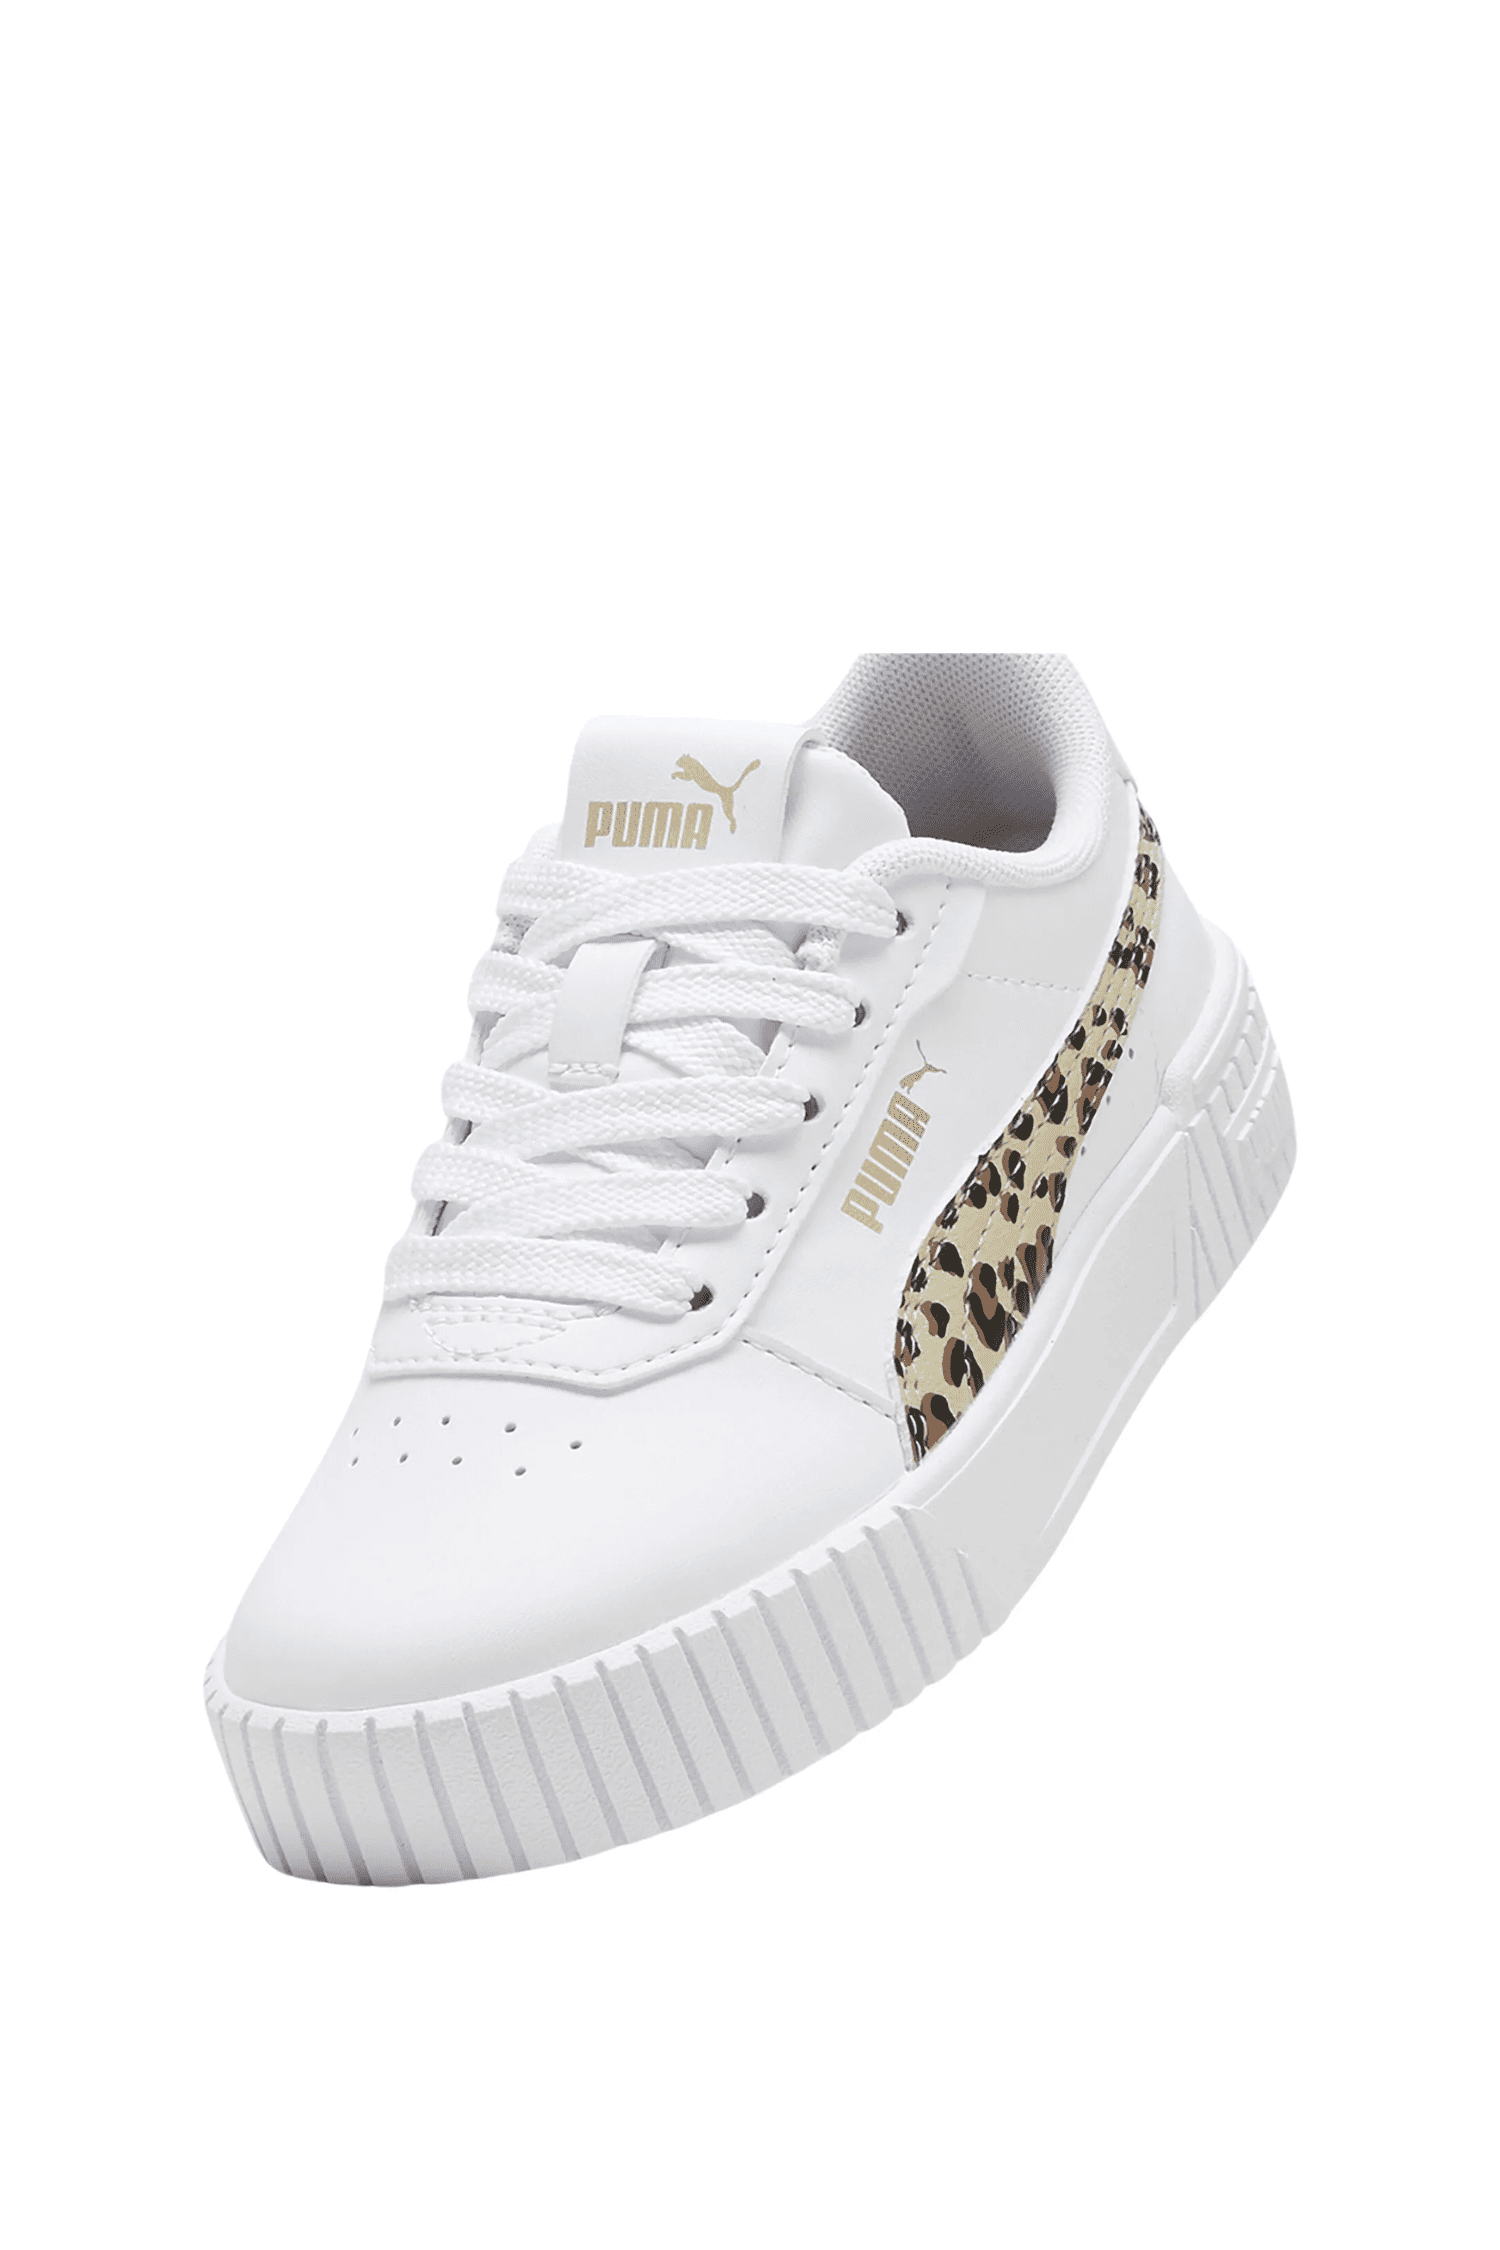 נעלי פומה Puma Carina 2.0 Animal Update PS לילדות בצבע לבן-Puma-28-נאקו